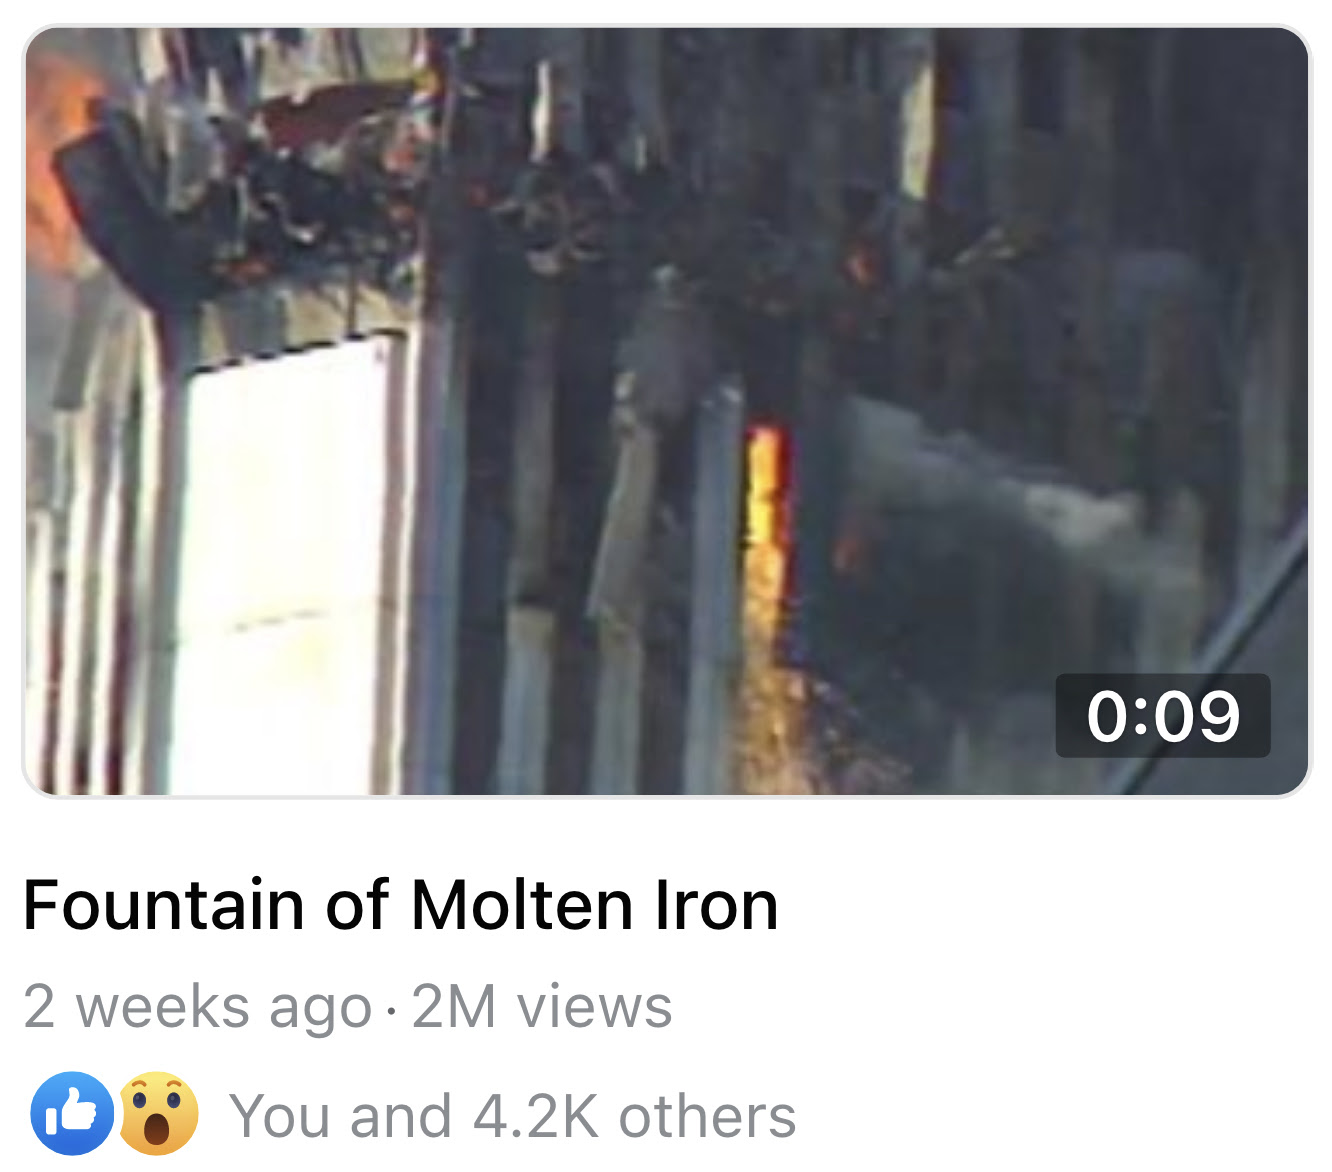 Fountain of Molten Iron web